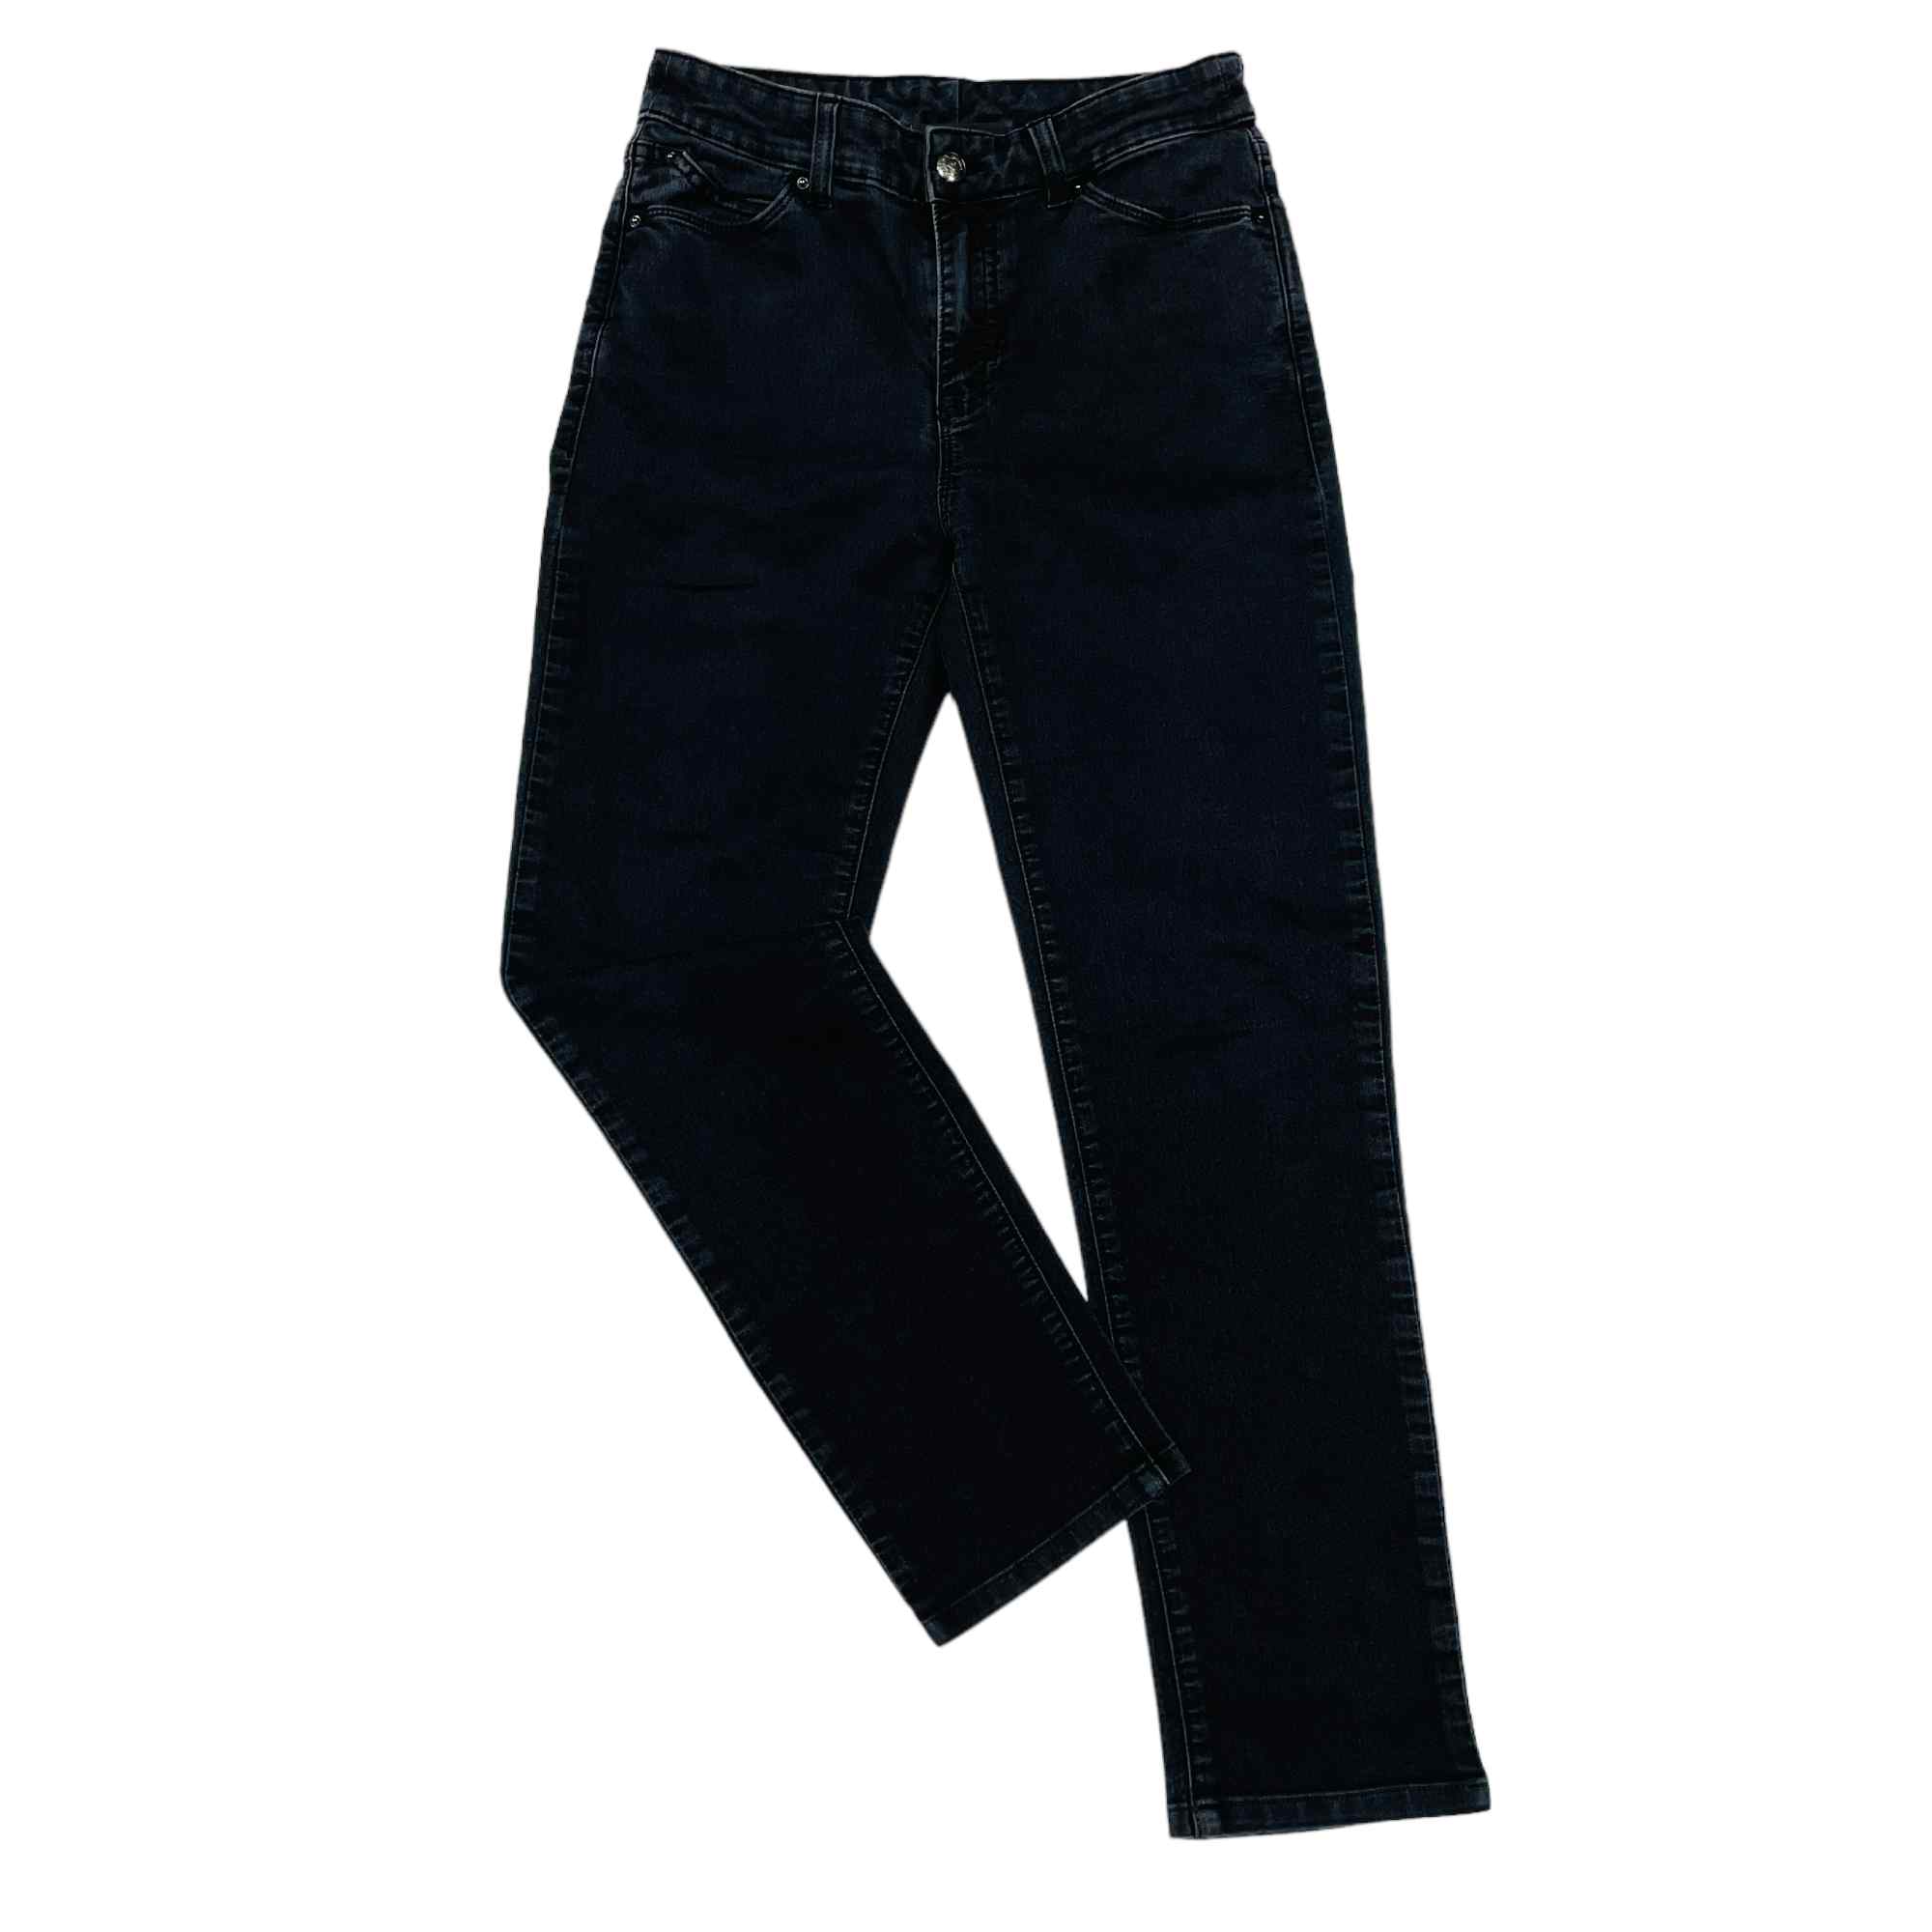 Armani Jeans - W26 L24